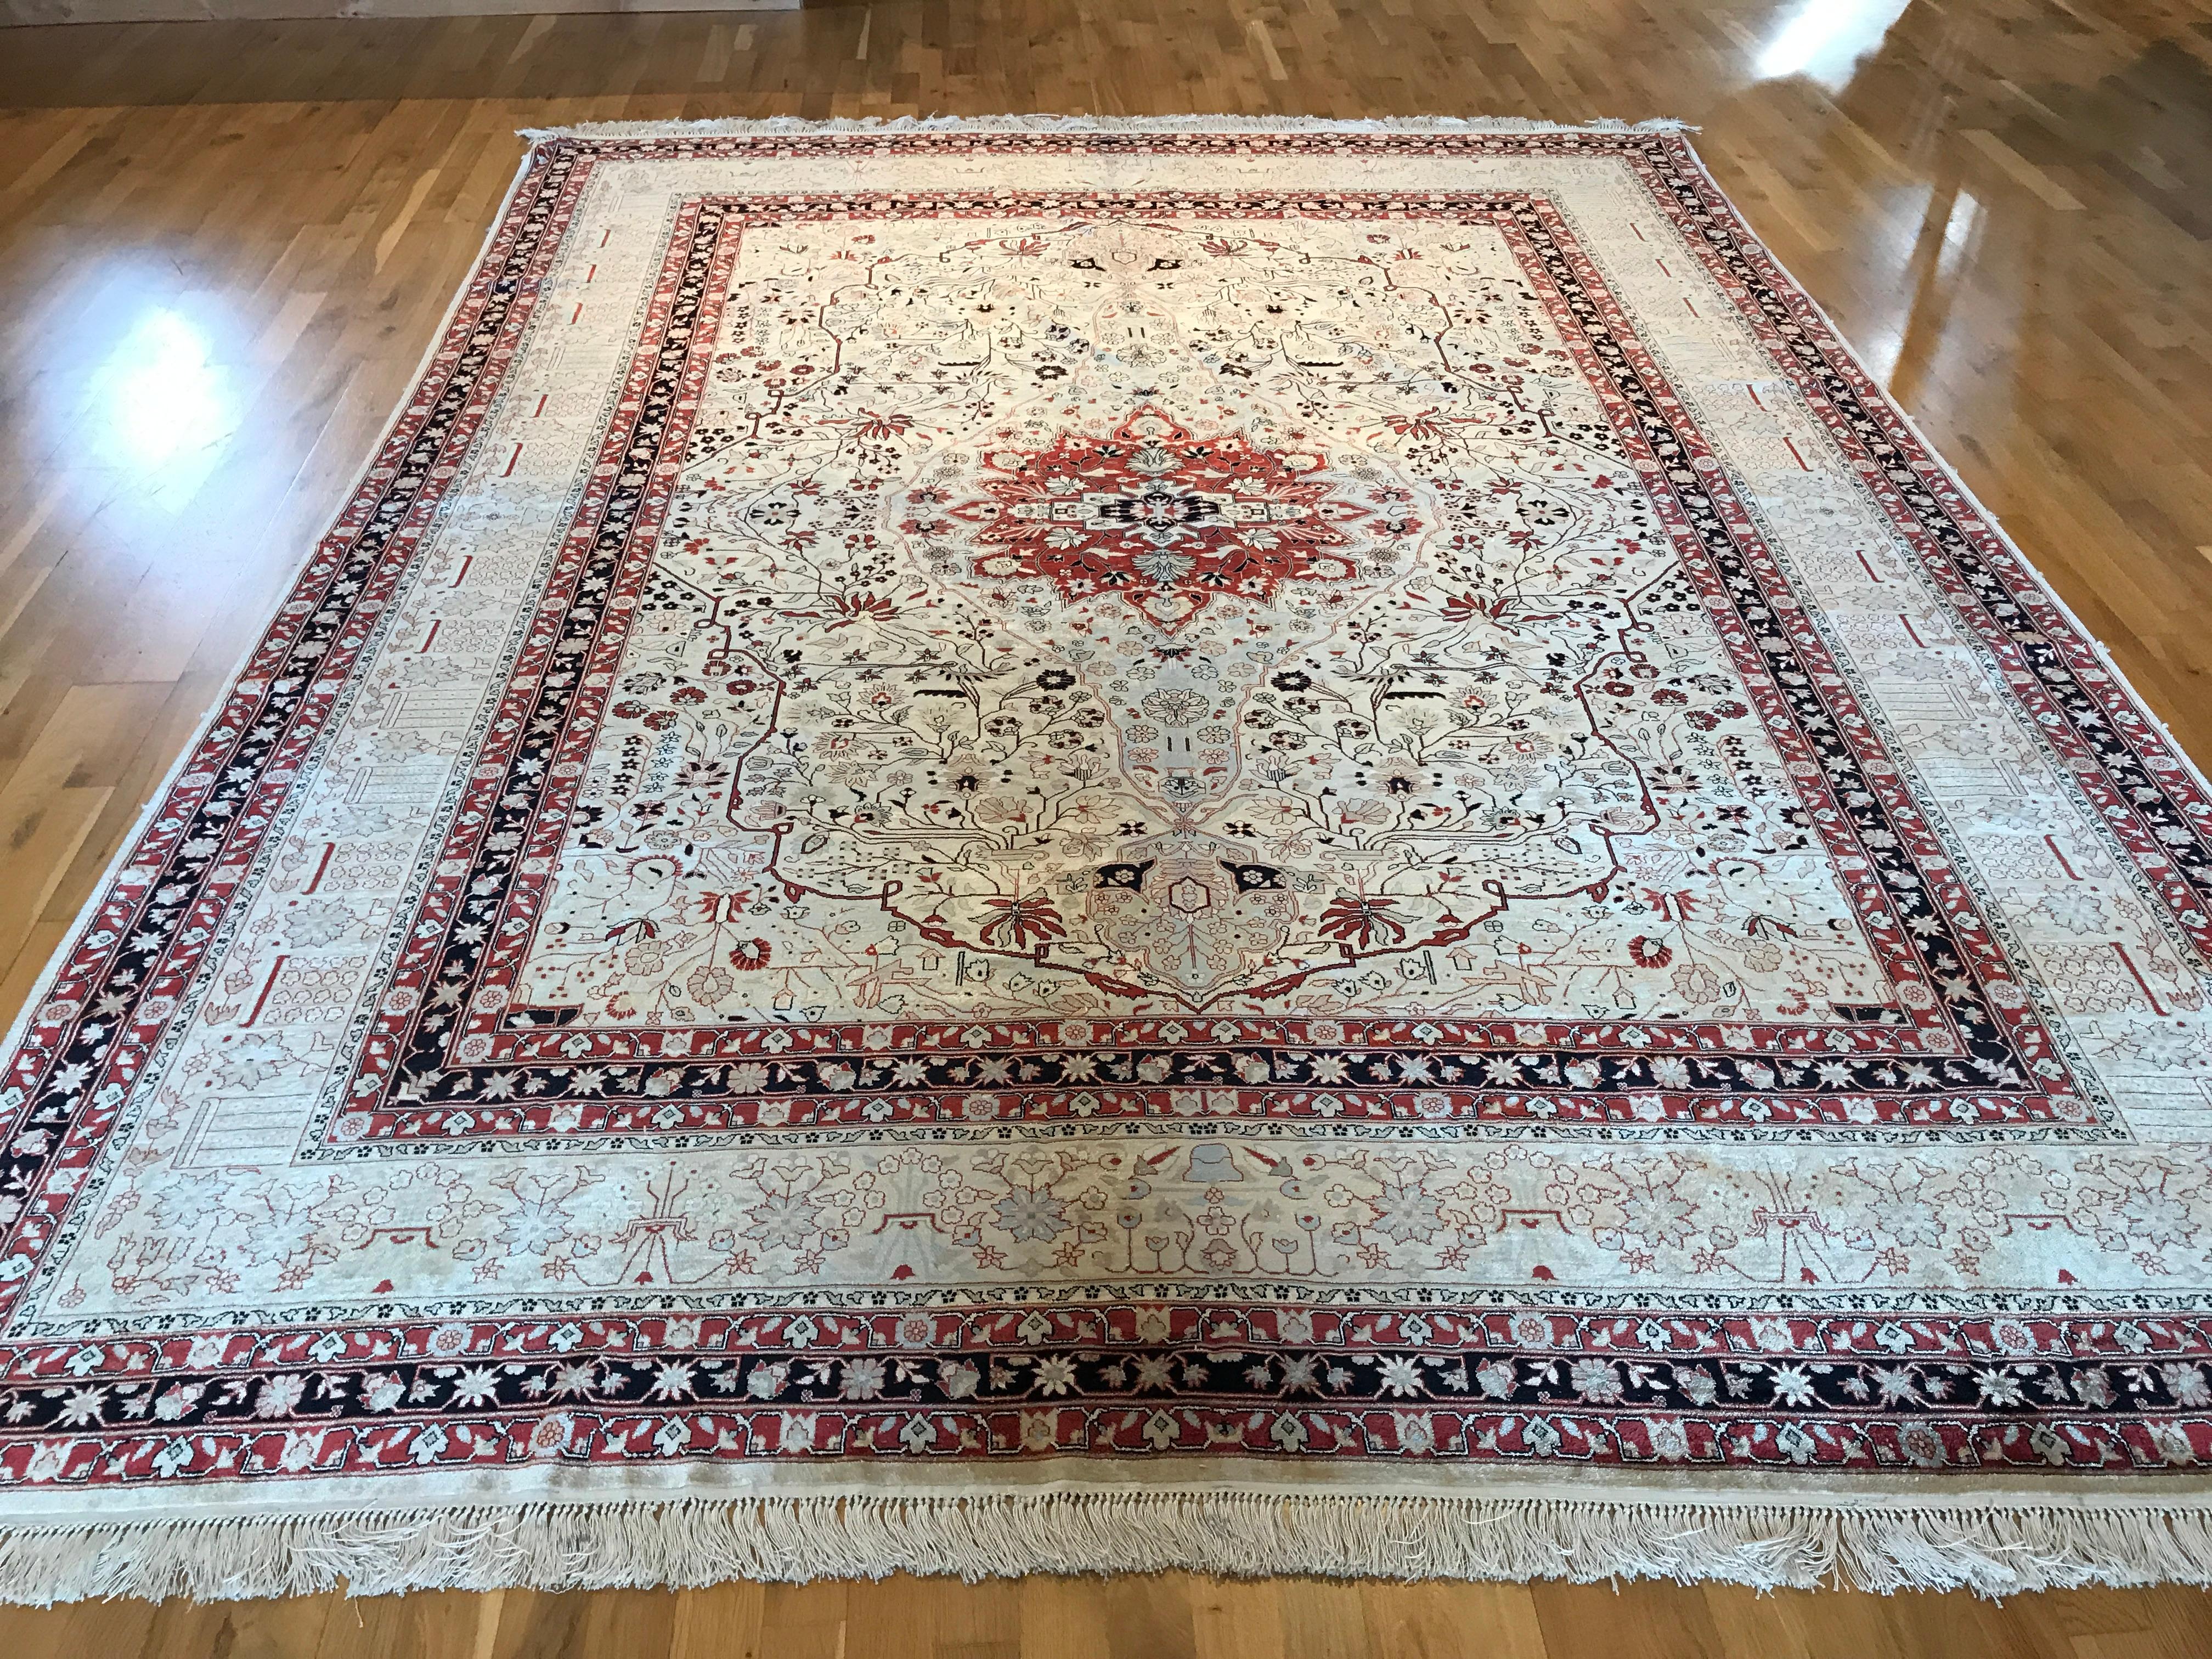 Obwohl sie erst in jüngerer Zeit in die Tradition der persischen Teppichherstellung aufgenommen wurden, haben sich die Teppiche aus Qom (oder Qum) mit ihrem unverwechselbaren Stil, ihren hochwertigen Materialien und ihrer Handwerkskunst einen festen